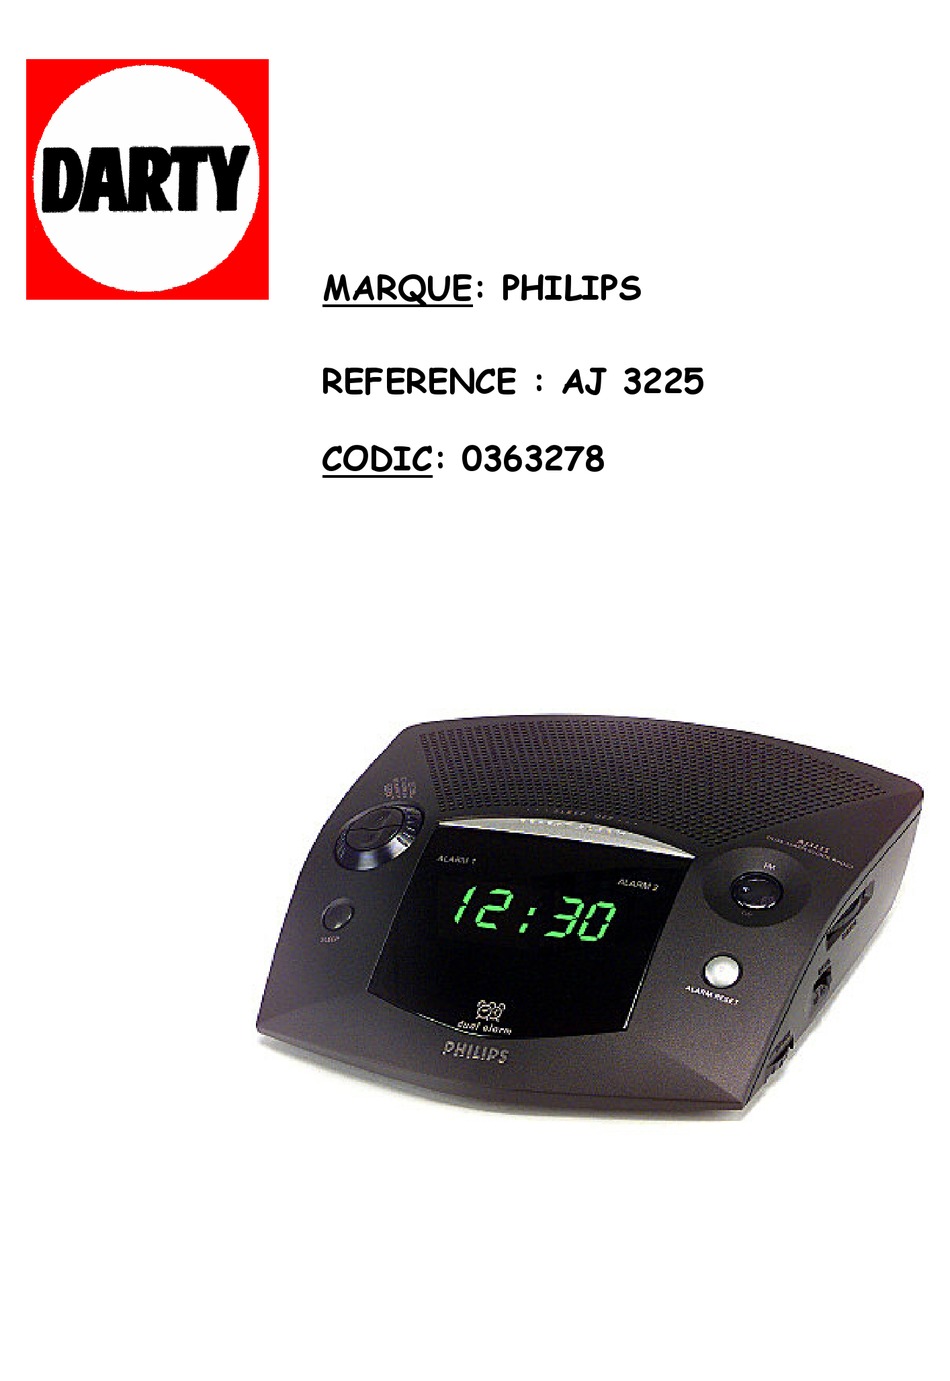 AJ6000 : un radioréveil connecté multifonction de Philips